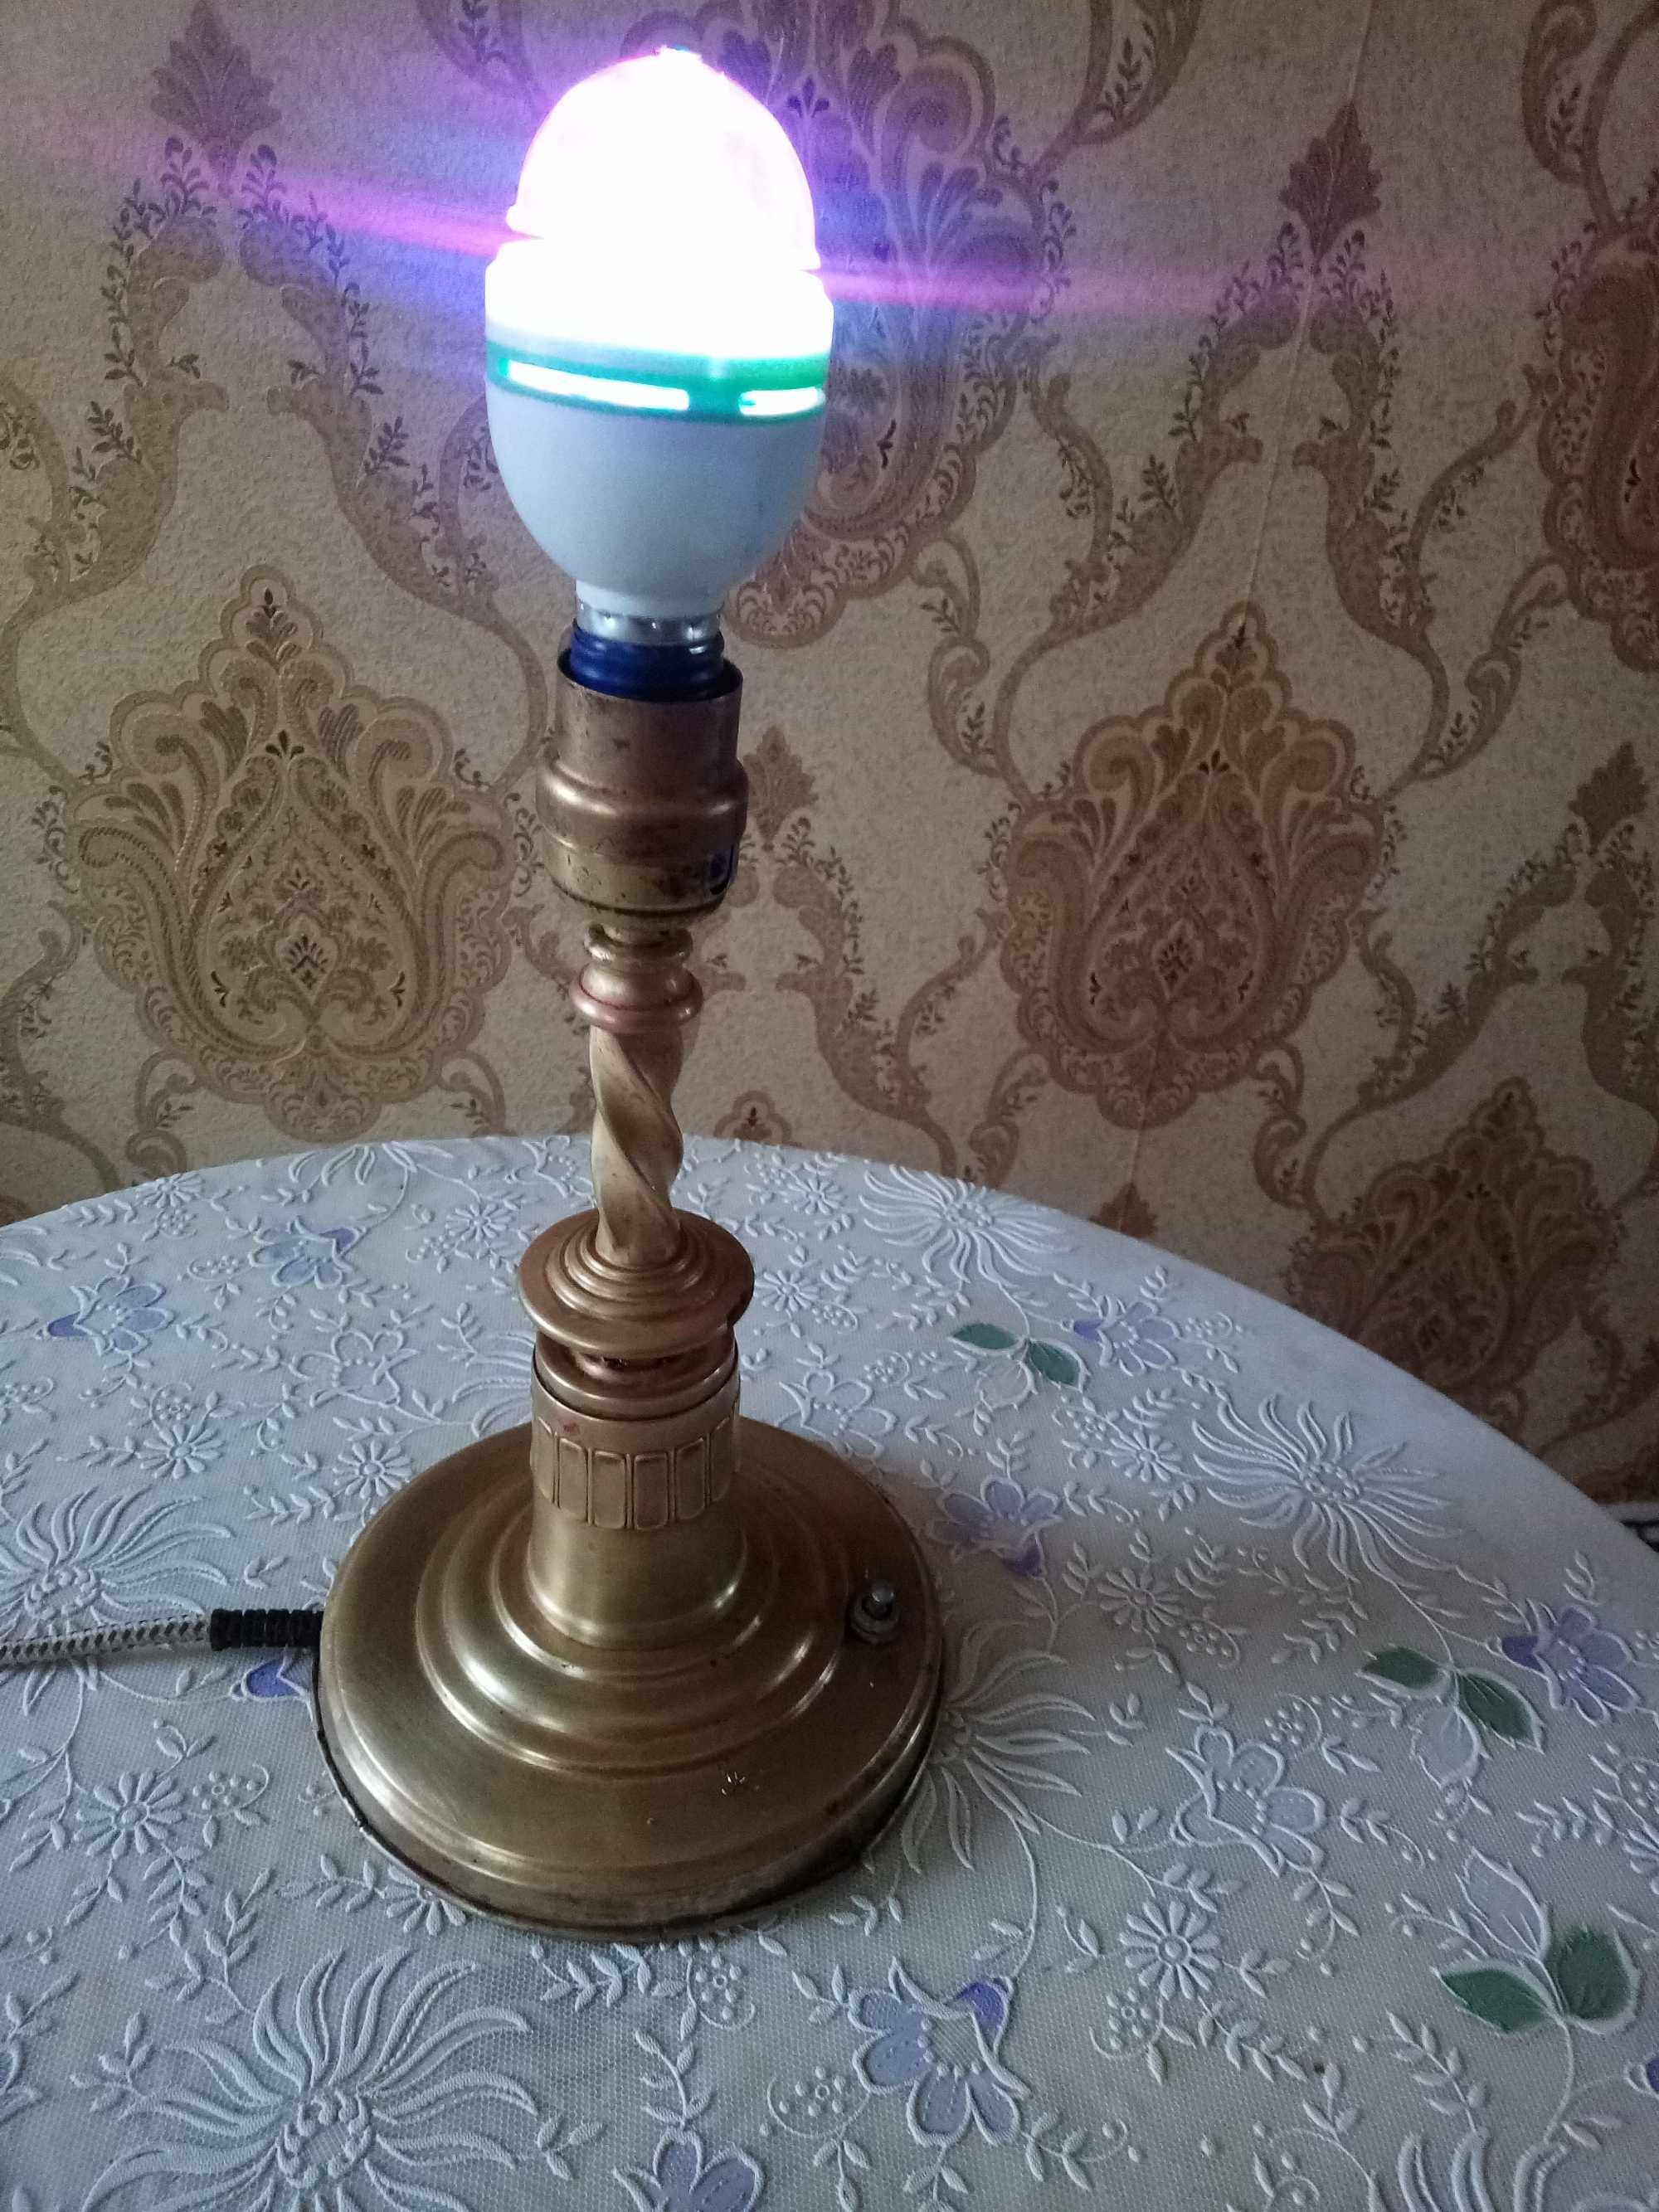 Медная настольная лампа ручного производства до 1917 года.